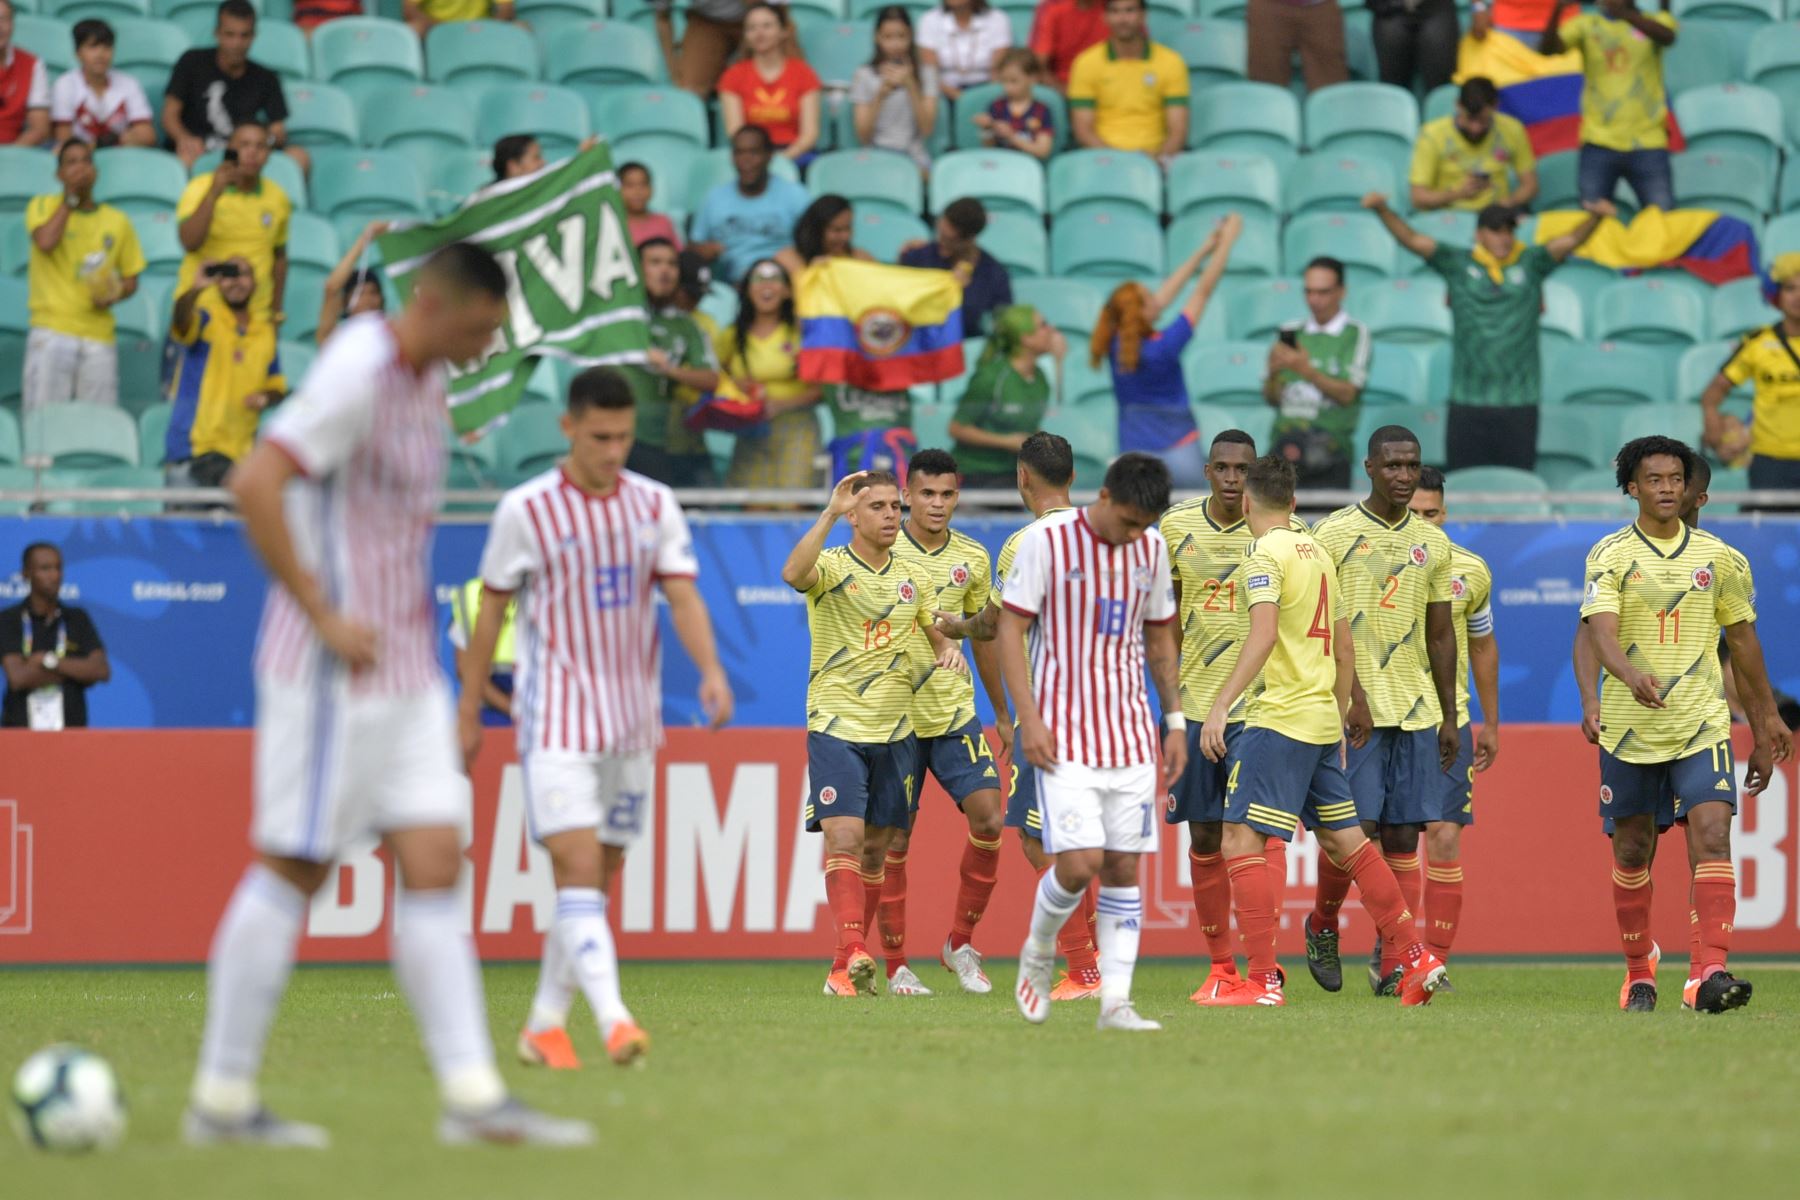 Gustavo Cuellar (L en amarillo) de Colombia celebra con sus compañeros de equipo luego de anotar contra Paraguay durante su partido de torneo de fútbol de la Copa América.
Foto: AFP